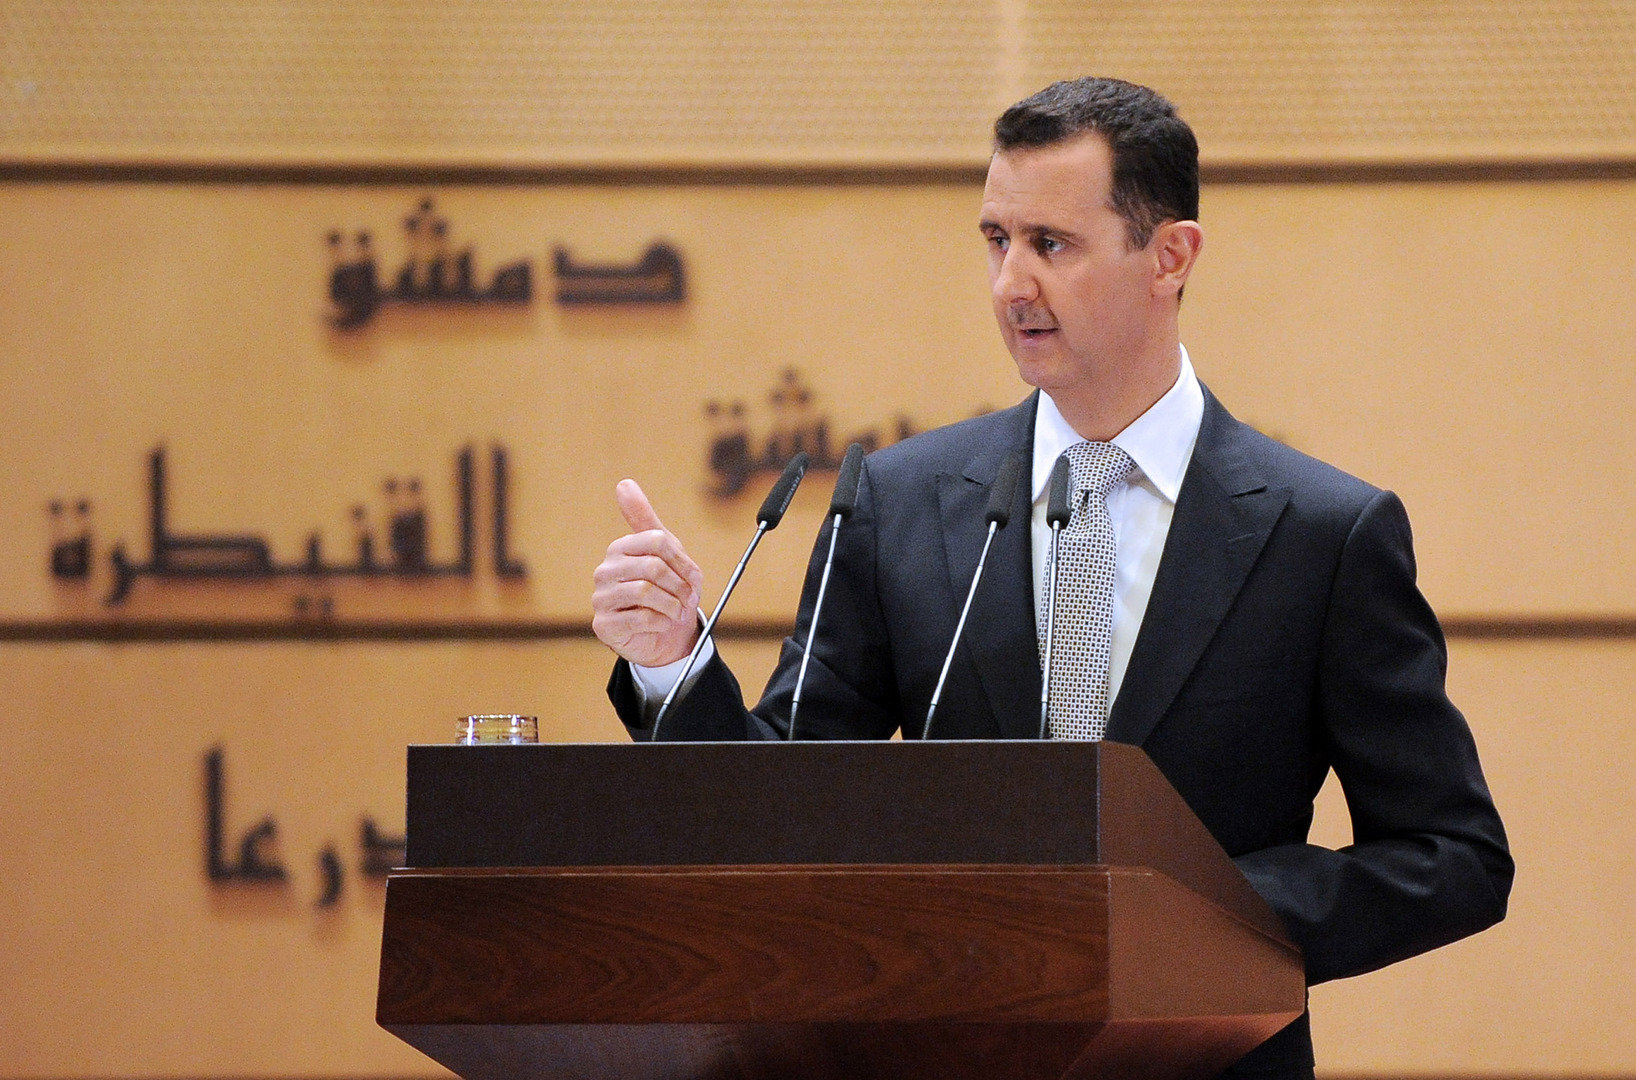 الأسد يصدر مرسوما يتضمن إعفاءات وتسهيلات غير مسبوقة